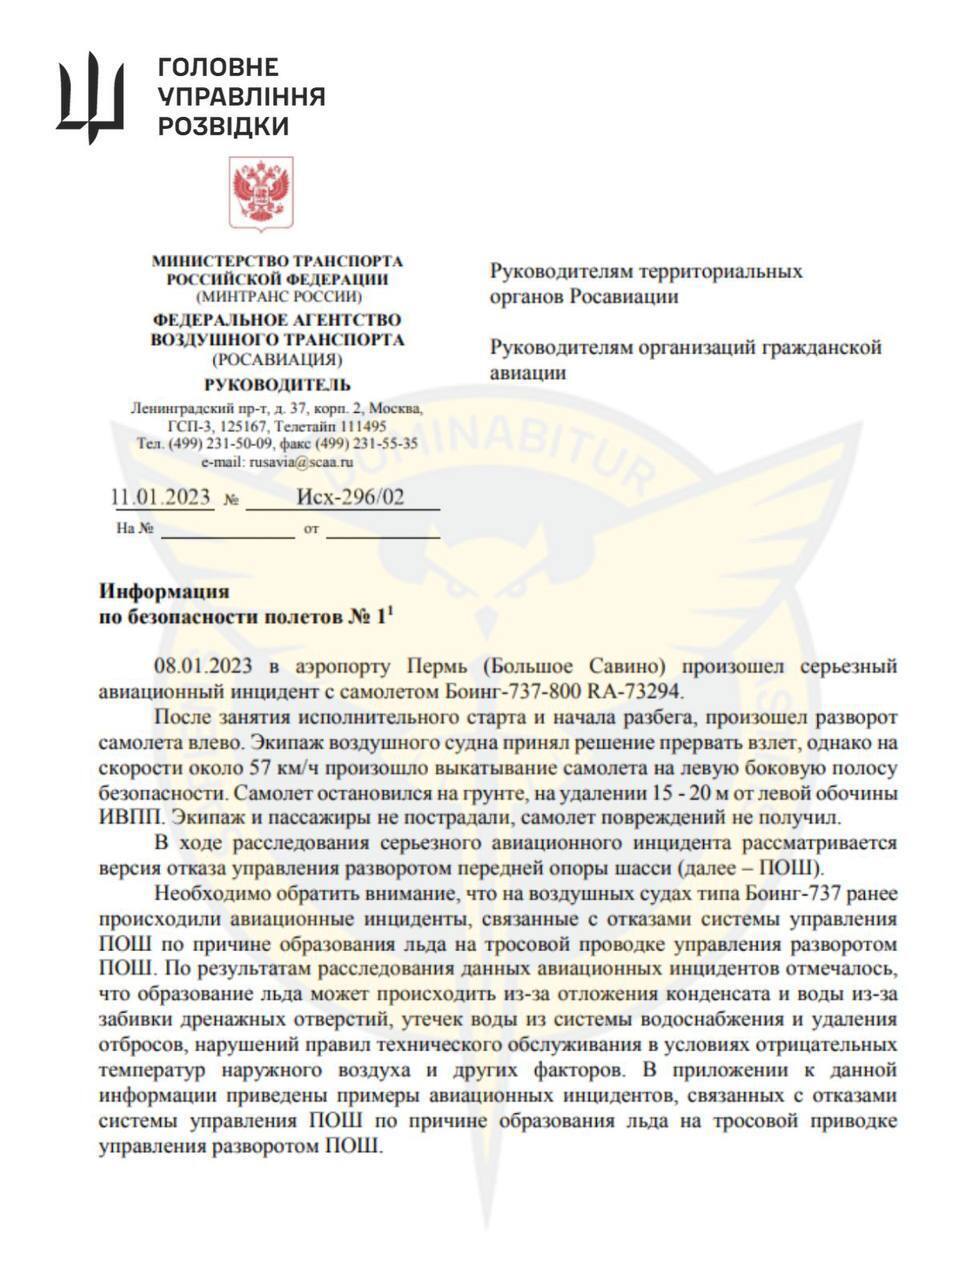 Авіація РФ перебуває на межі колапсу: кіберфахівці ГУР хакнули великий обсяг закритих службових документів